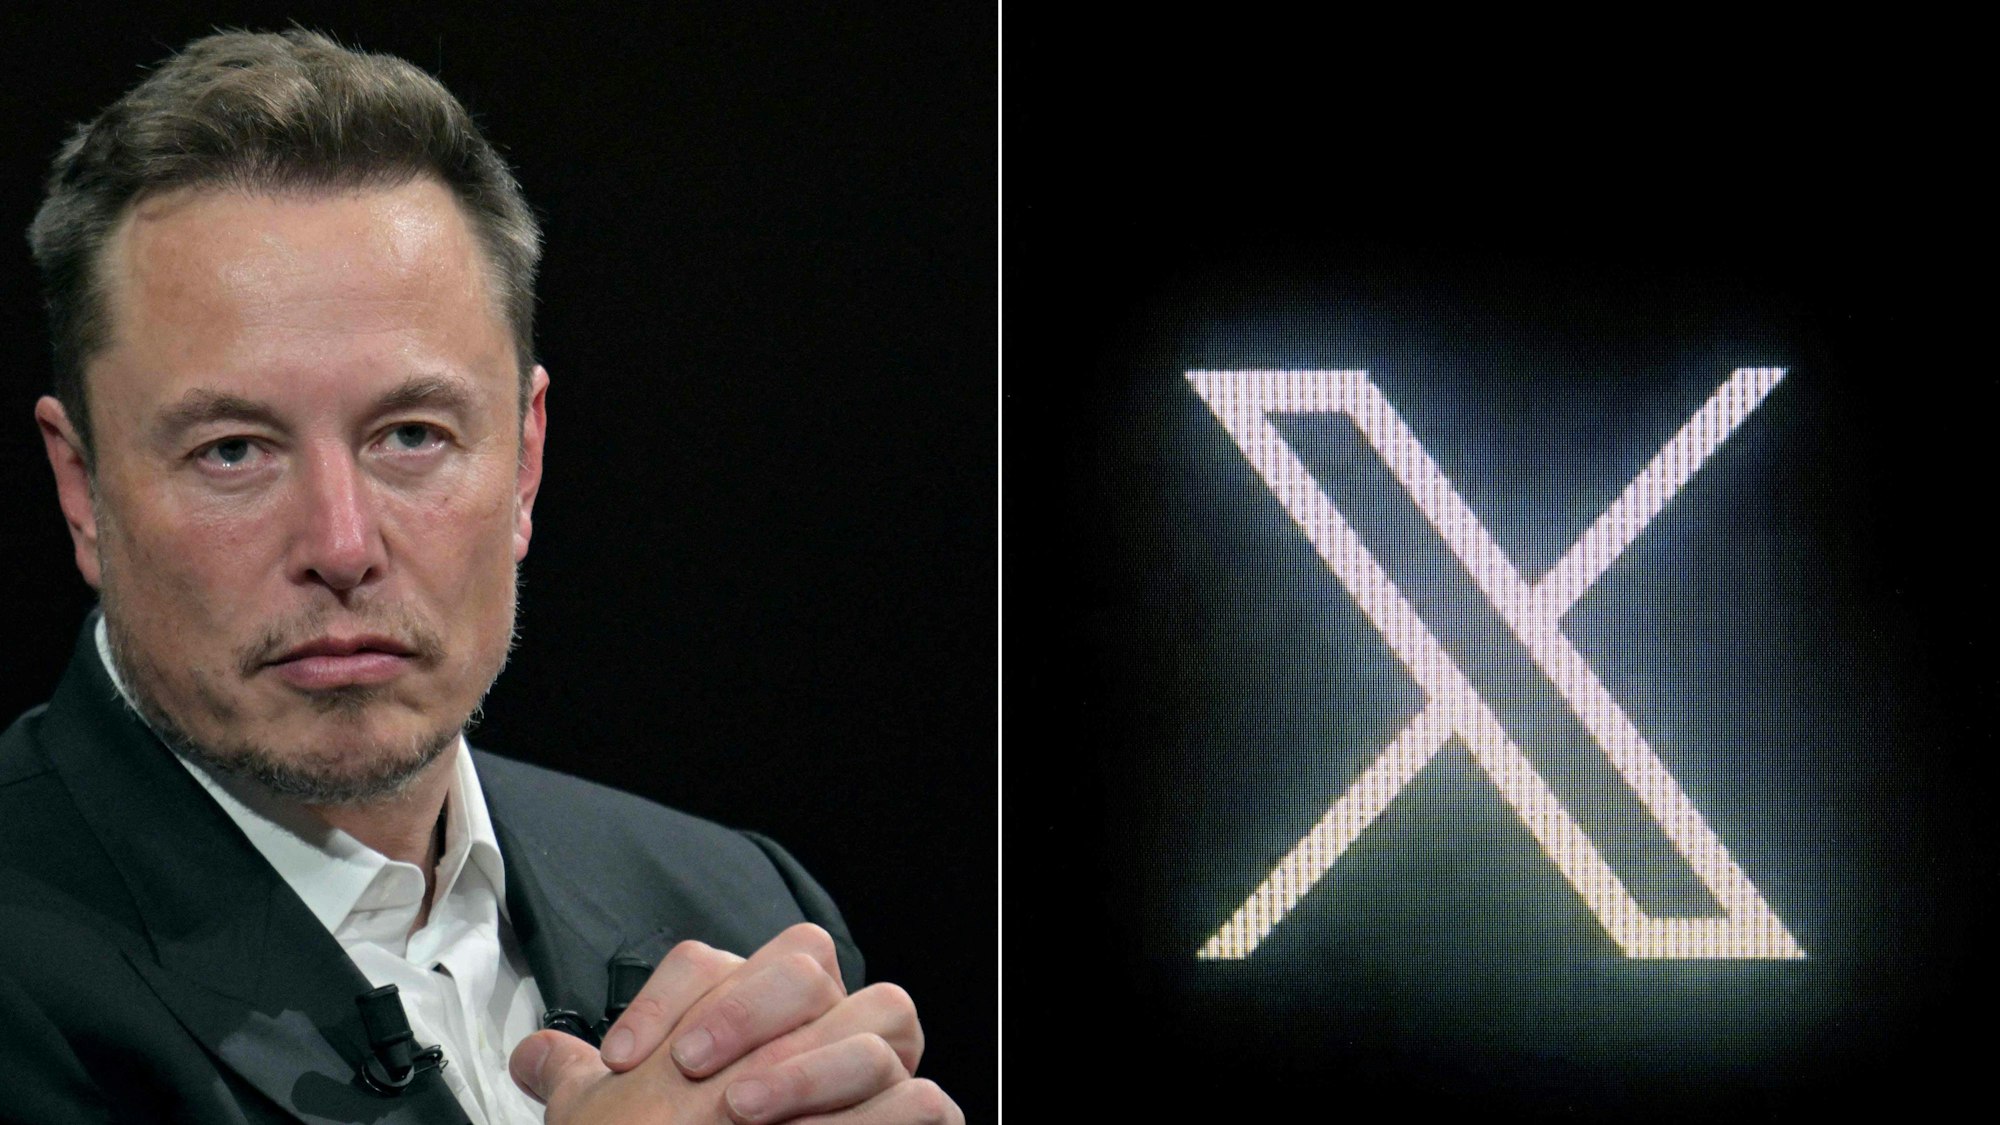 Fotozusammenschnitt von Elon Musk und dem X-Logo.